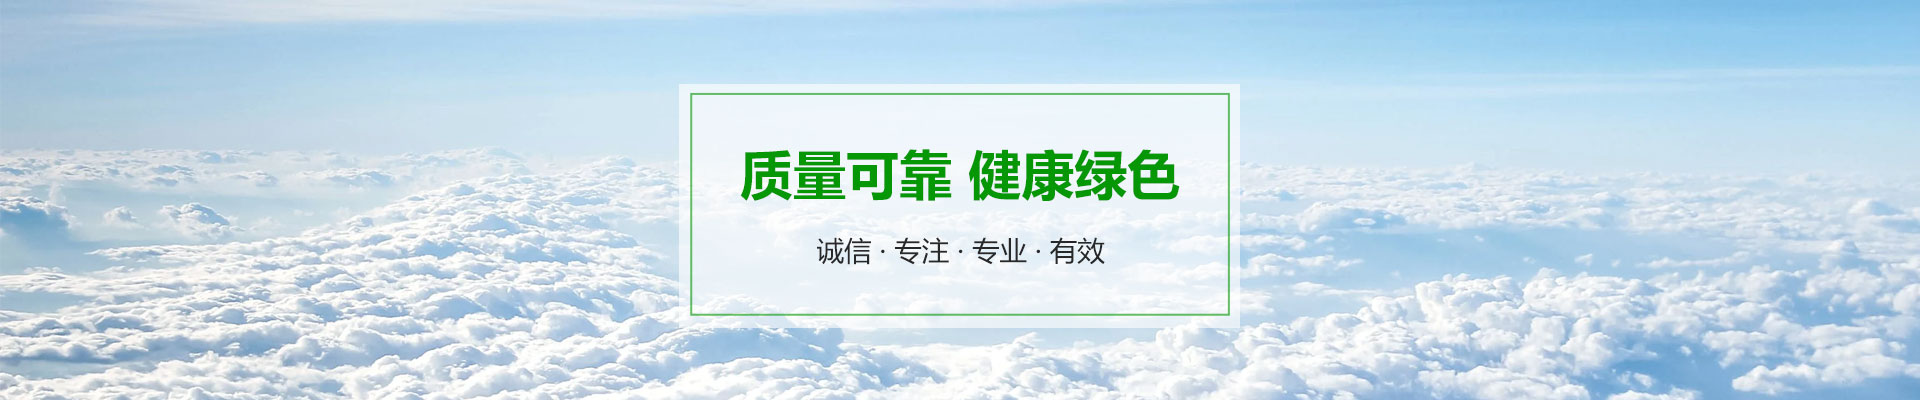 tyc1286太阳集团-官方网站(中国)NO.1